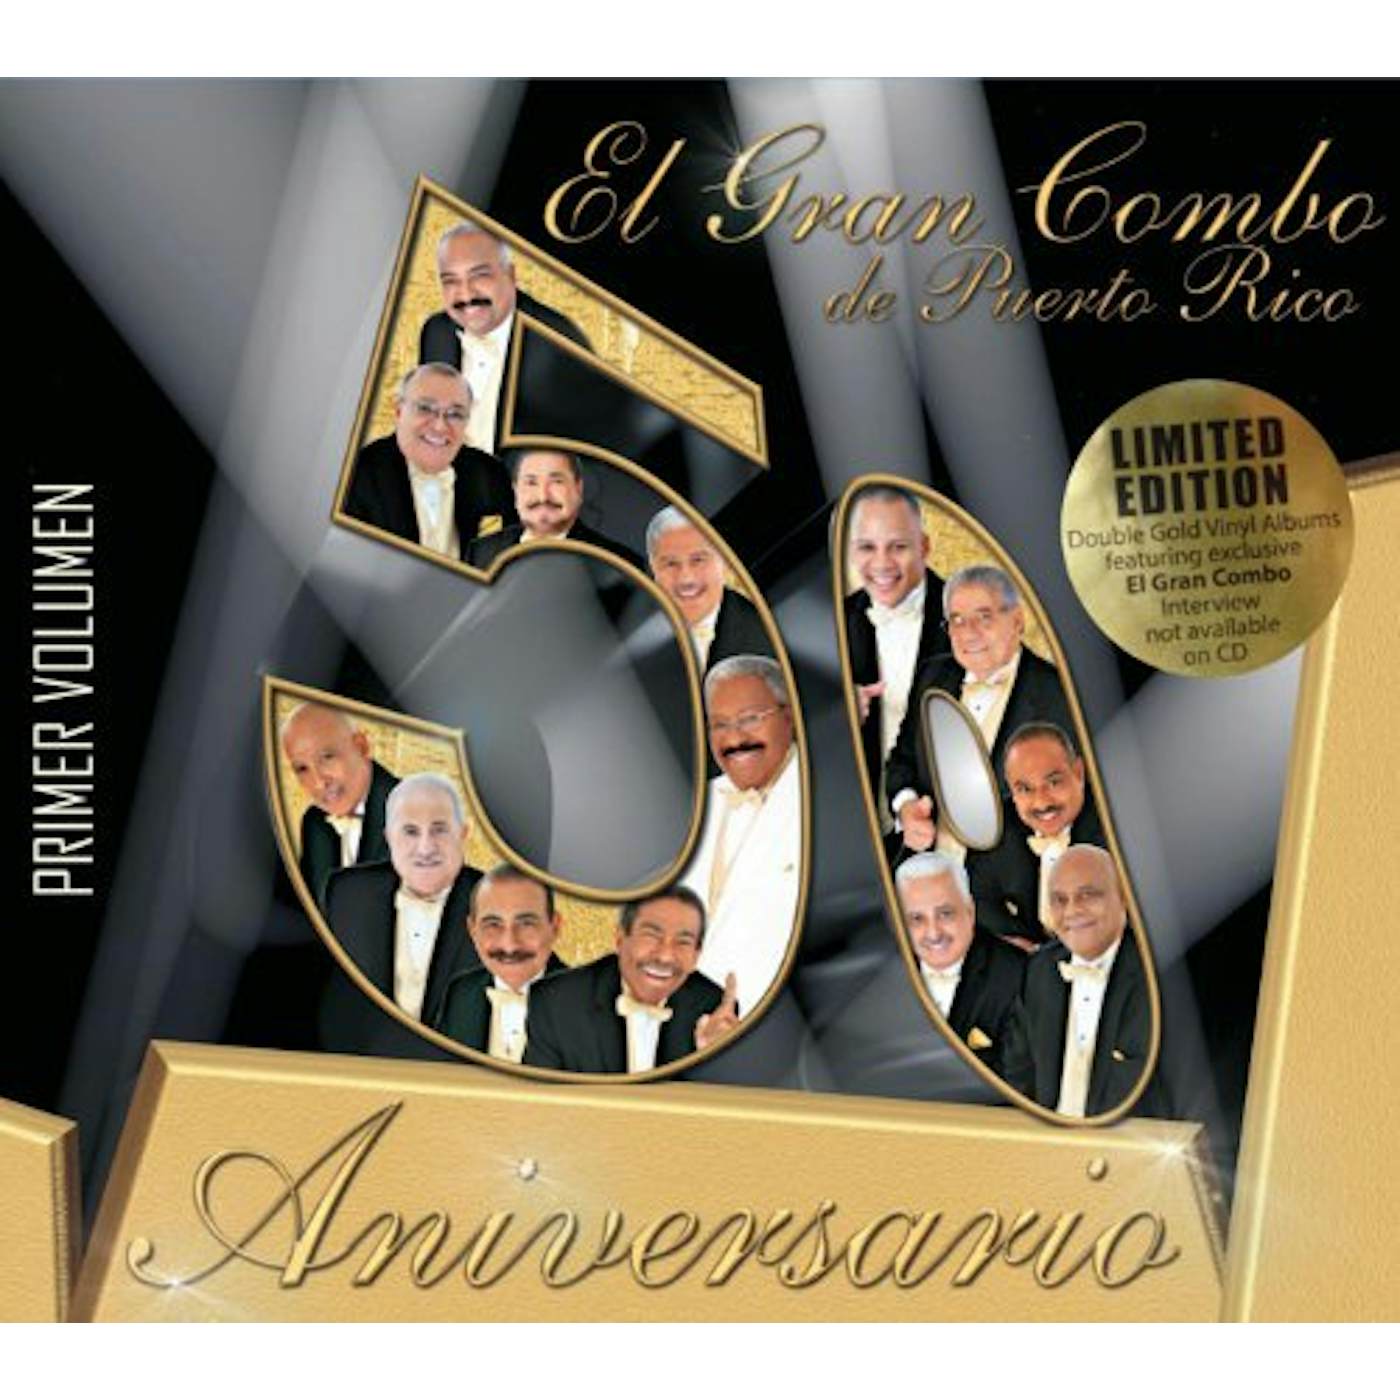 Gran Combo de Puerto Rico 50 ANIVERSARIO 1 Vinyl Record